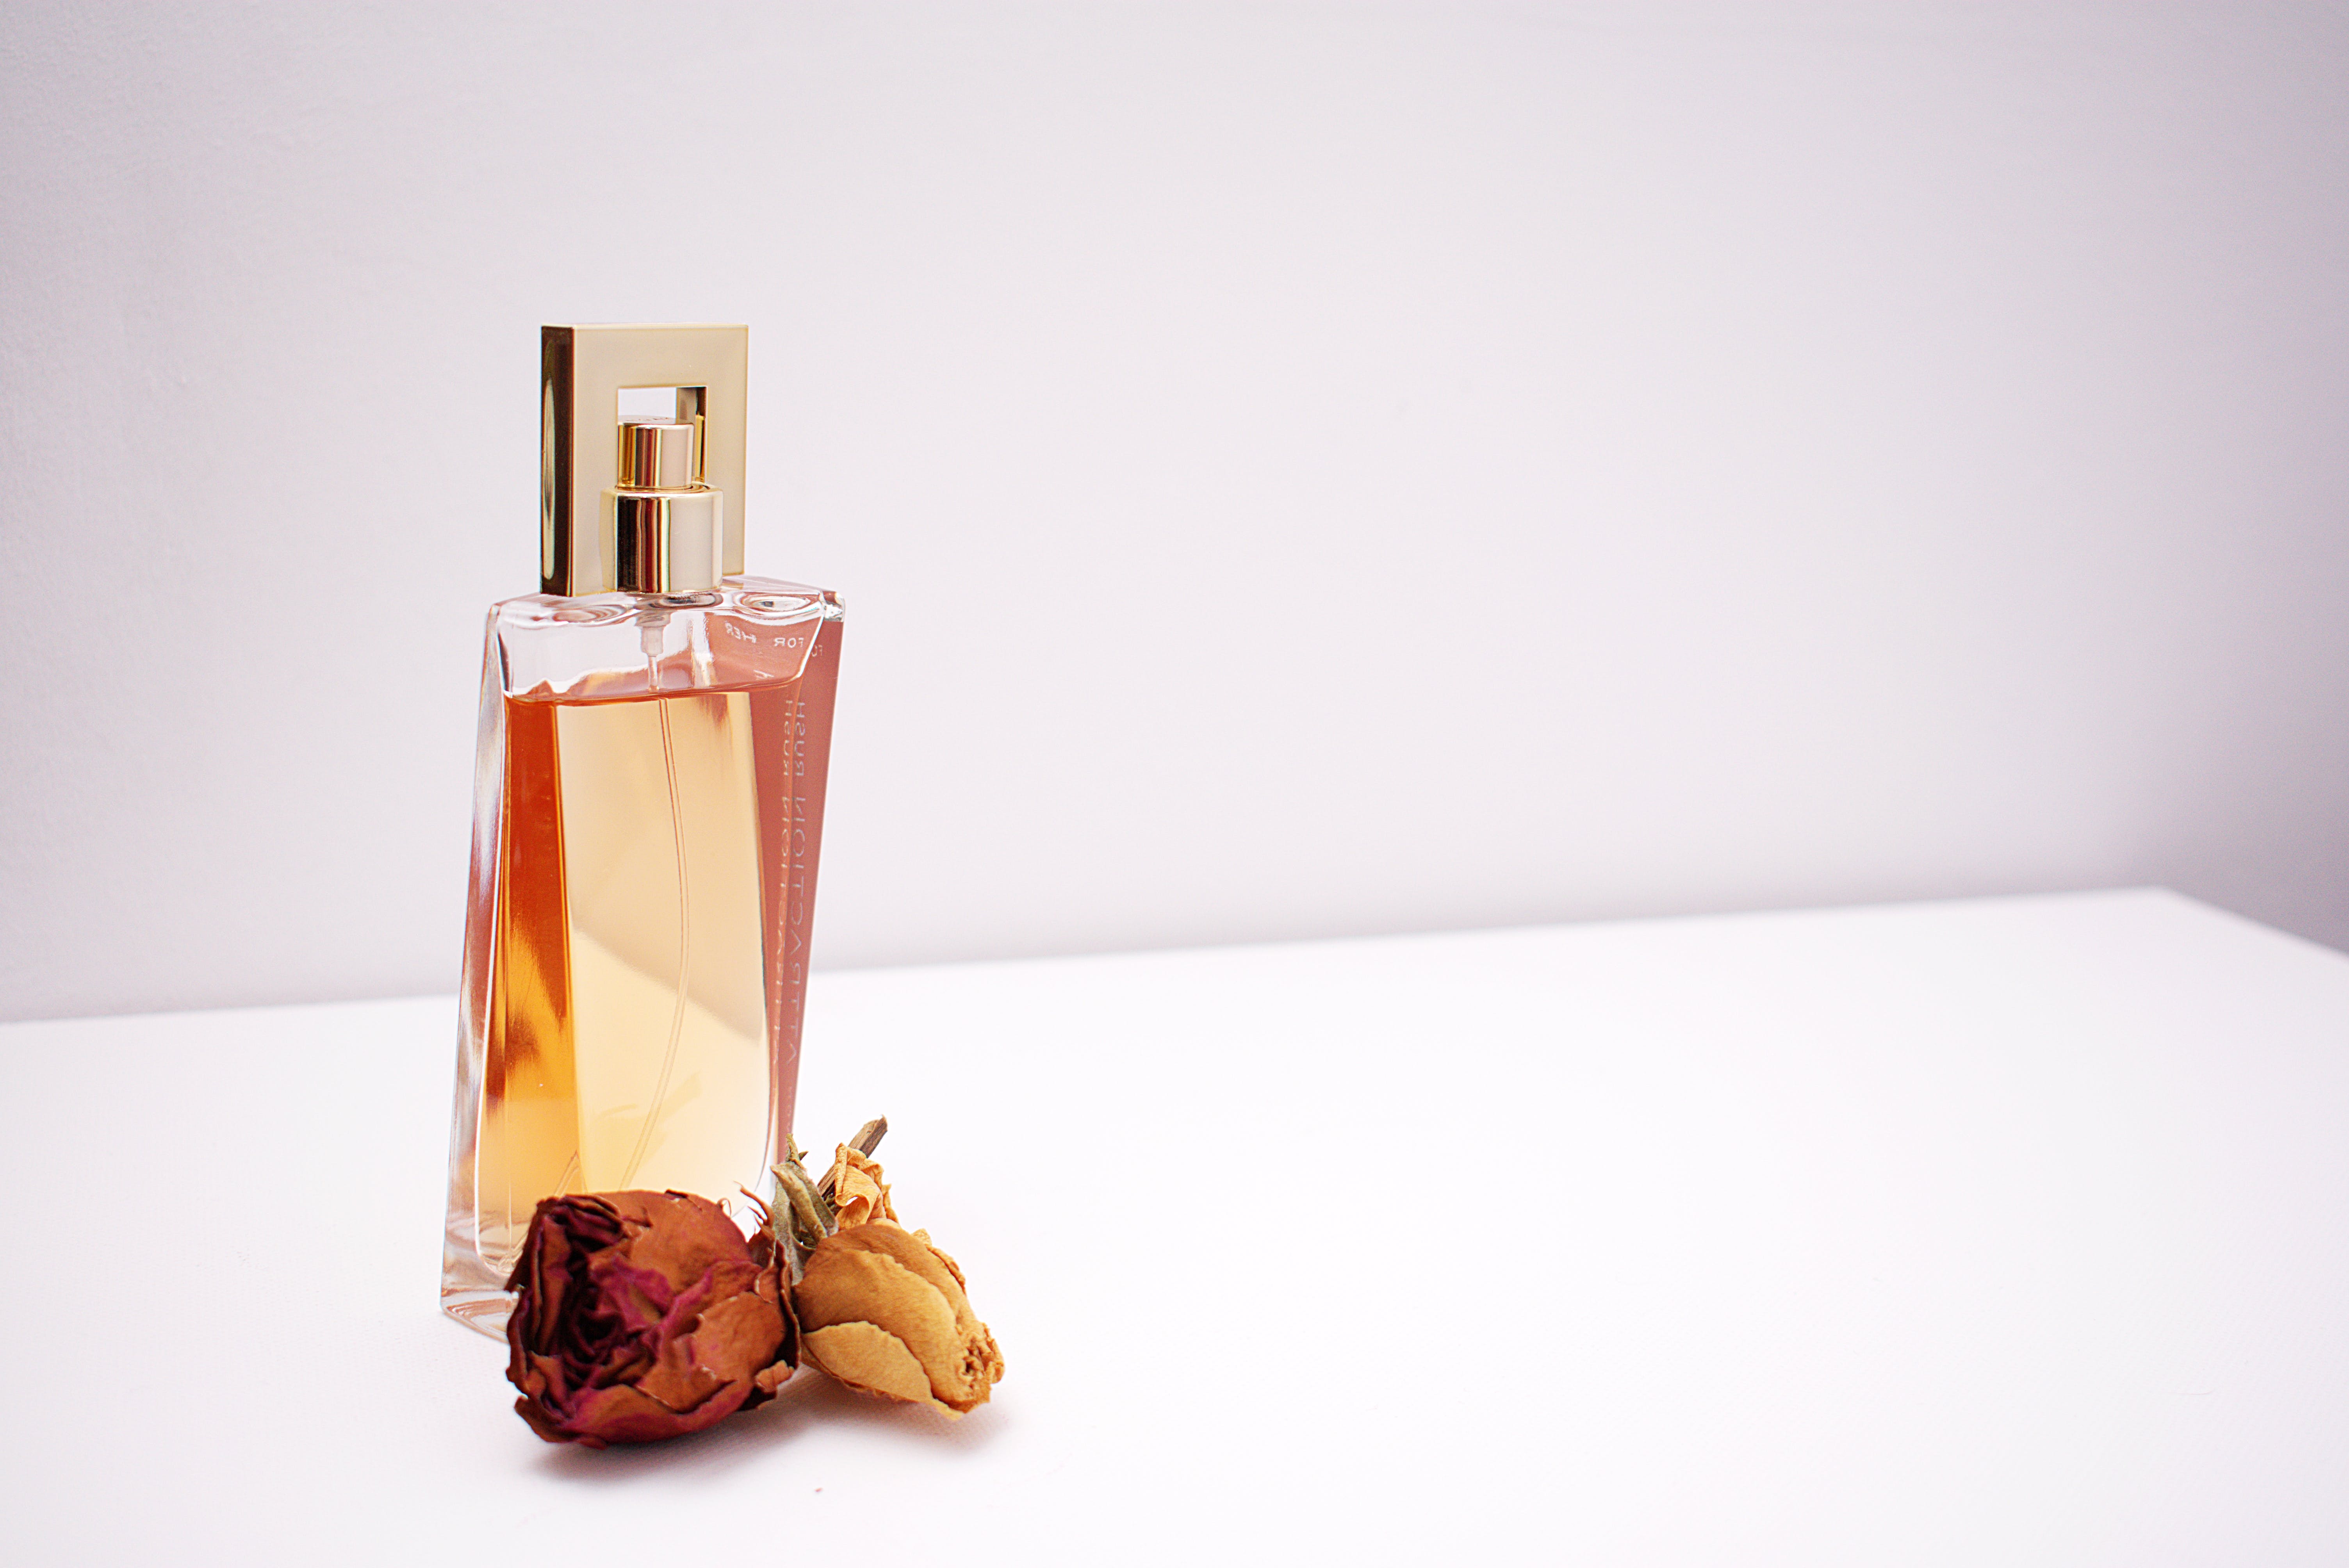 Un frasco de perfume. | Fuente: Pexels